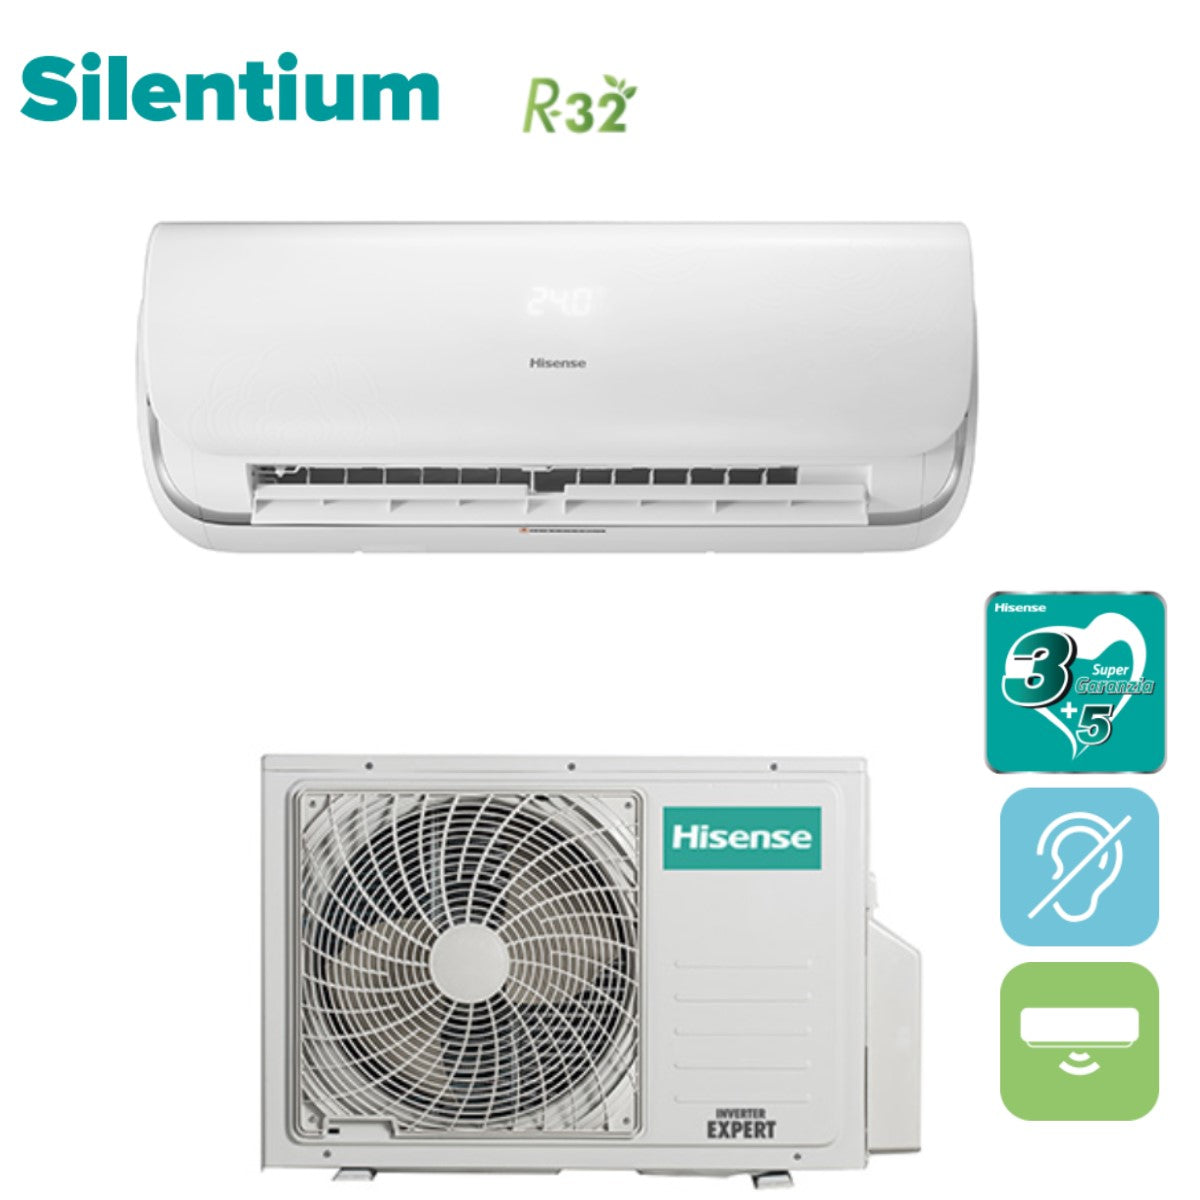 Hisense Inverter Silentium Air Conditioner 12000 Btu Qa35xx0ag R 32 A Climaconvenienza 6849